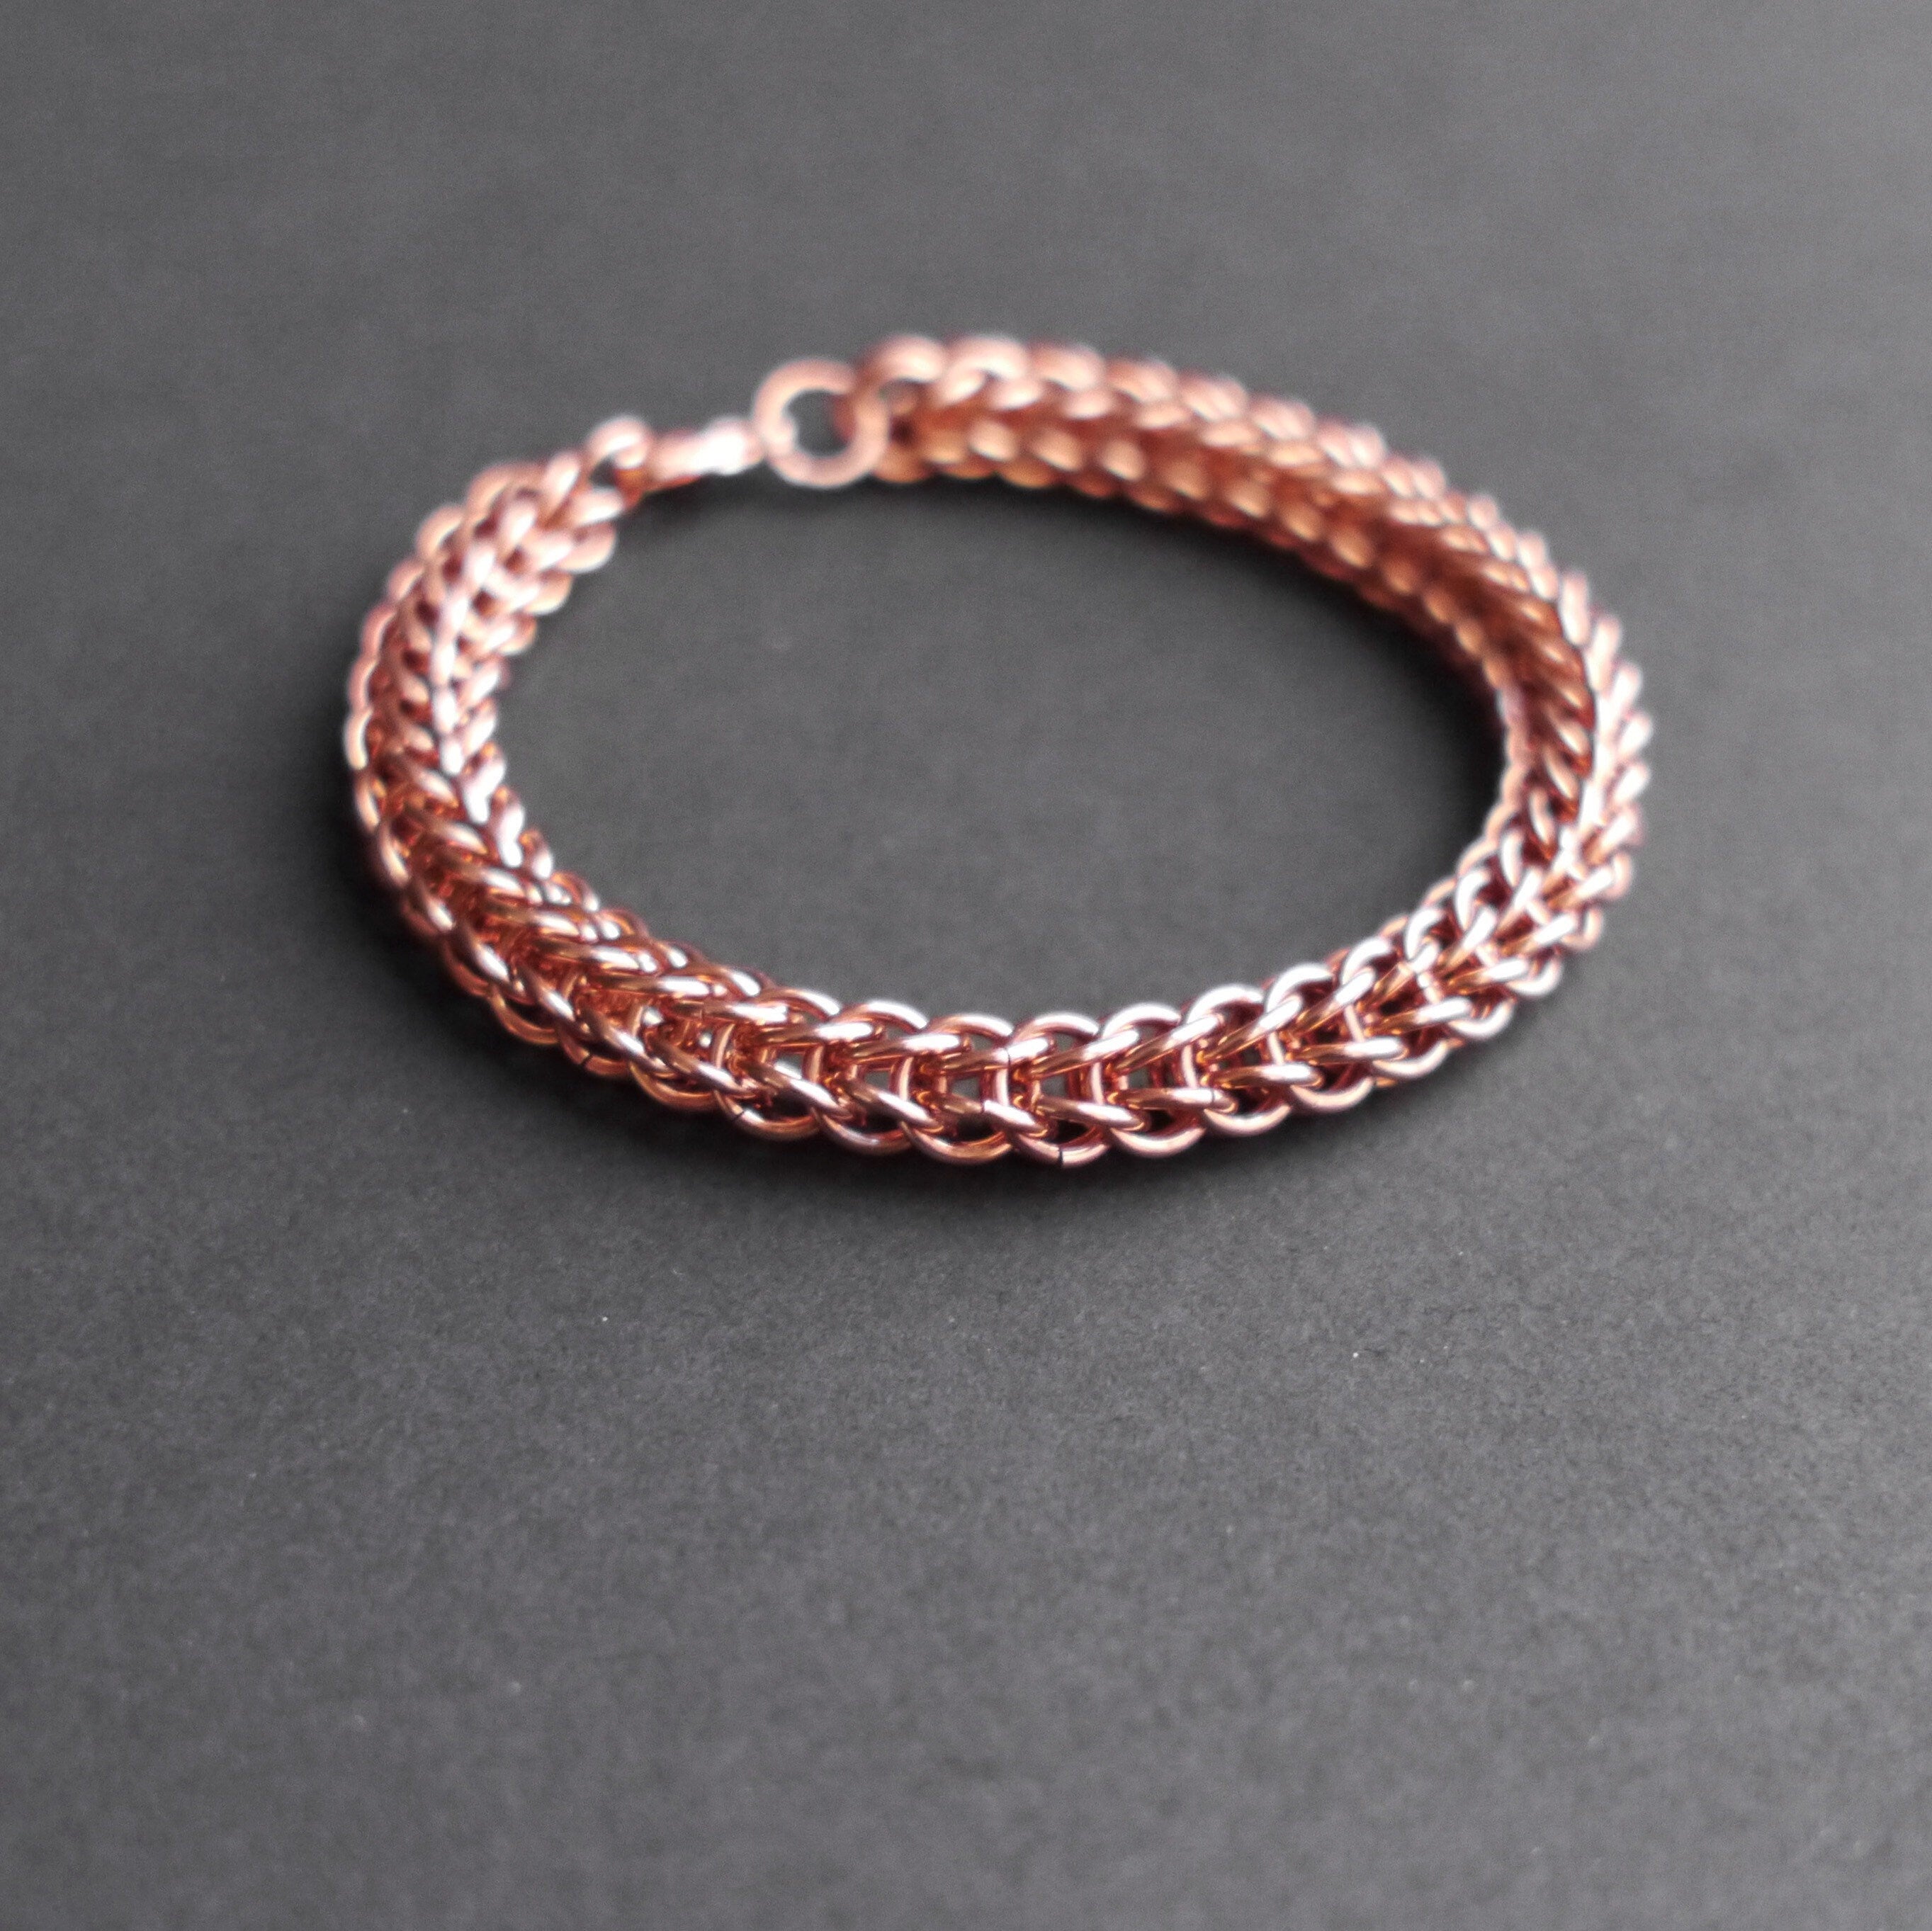 Copper small link chain bracelet | Bracelets by Debbie Long